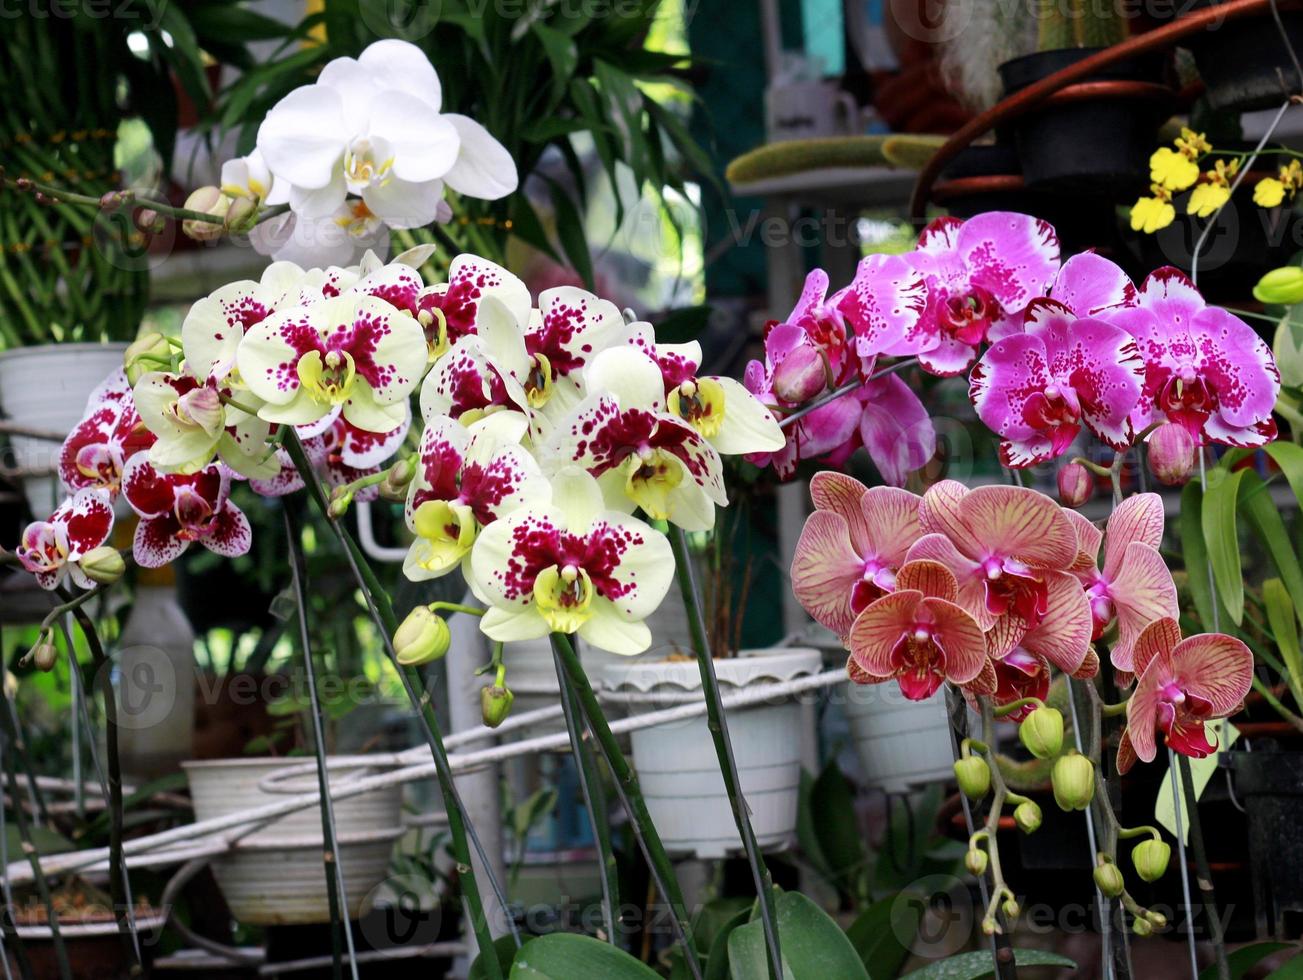 belles fleurs d'orchidées photo